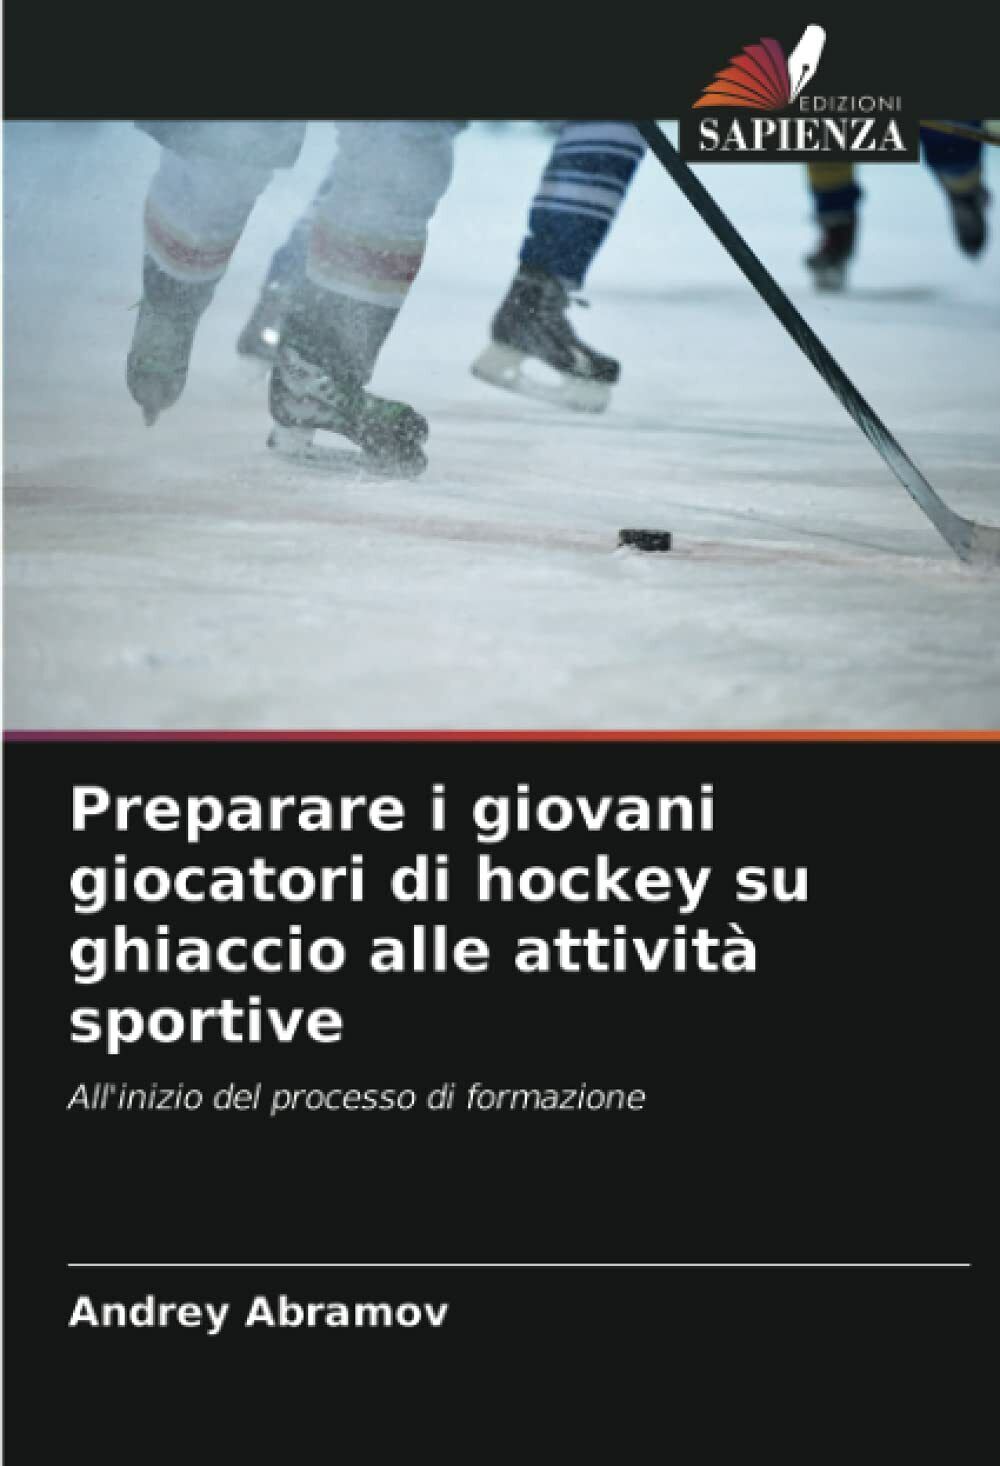 Preparare i giovani giocatori di hockey su ghiaccio alle attivit? sportive -2021